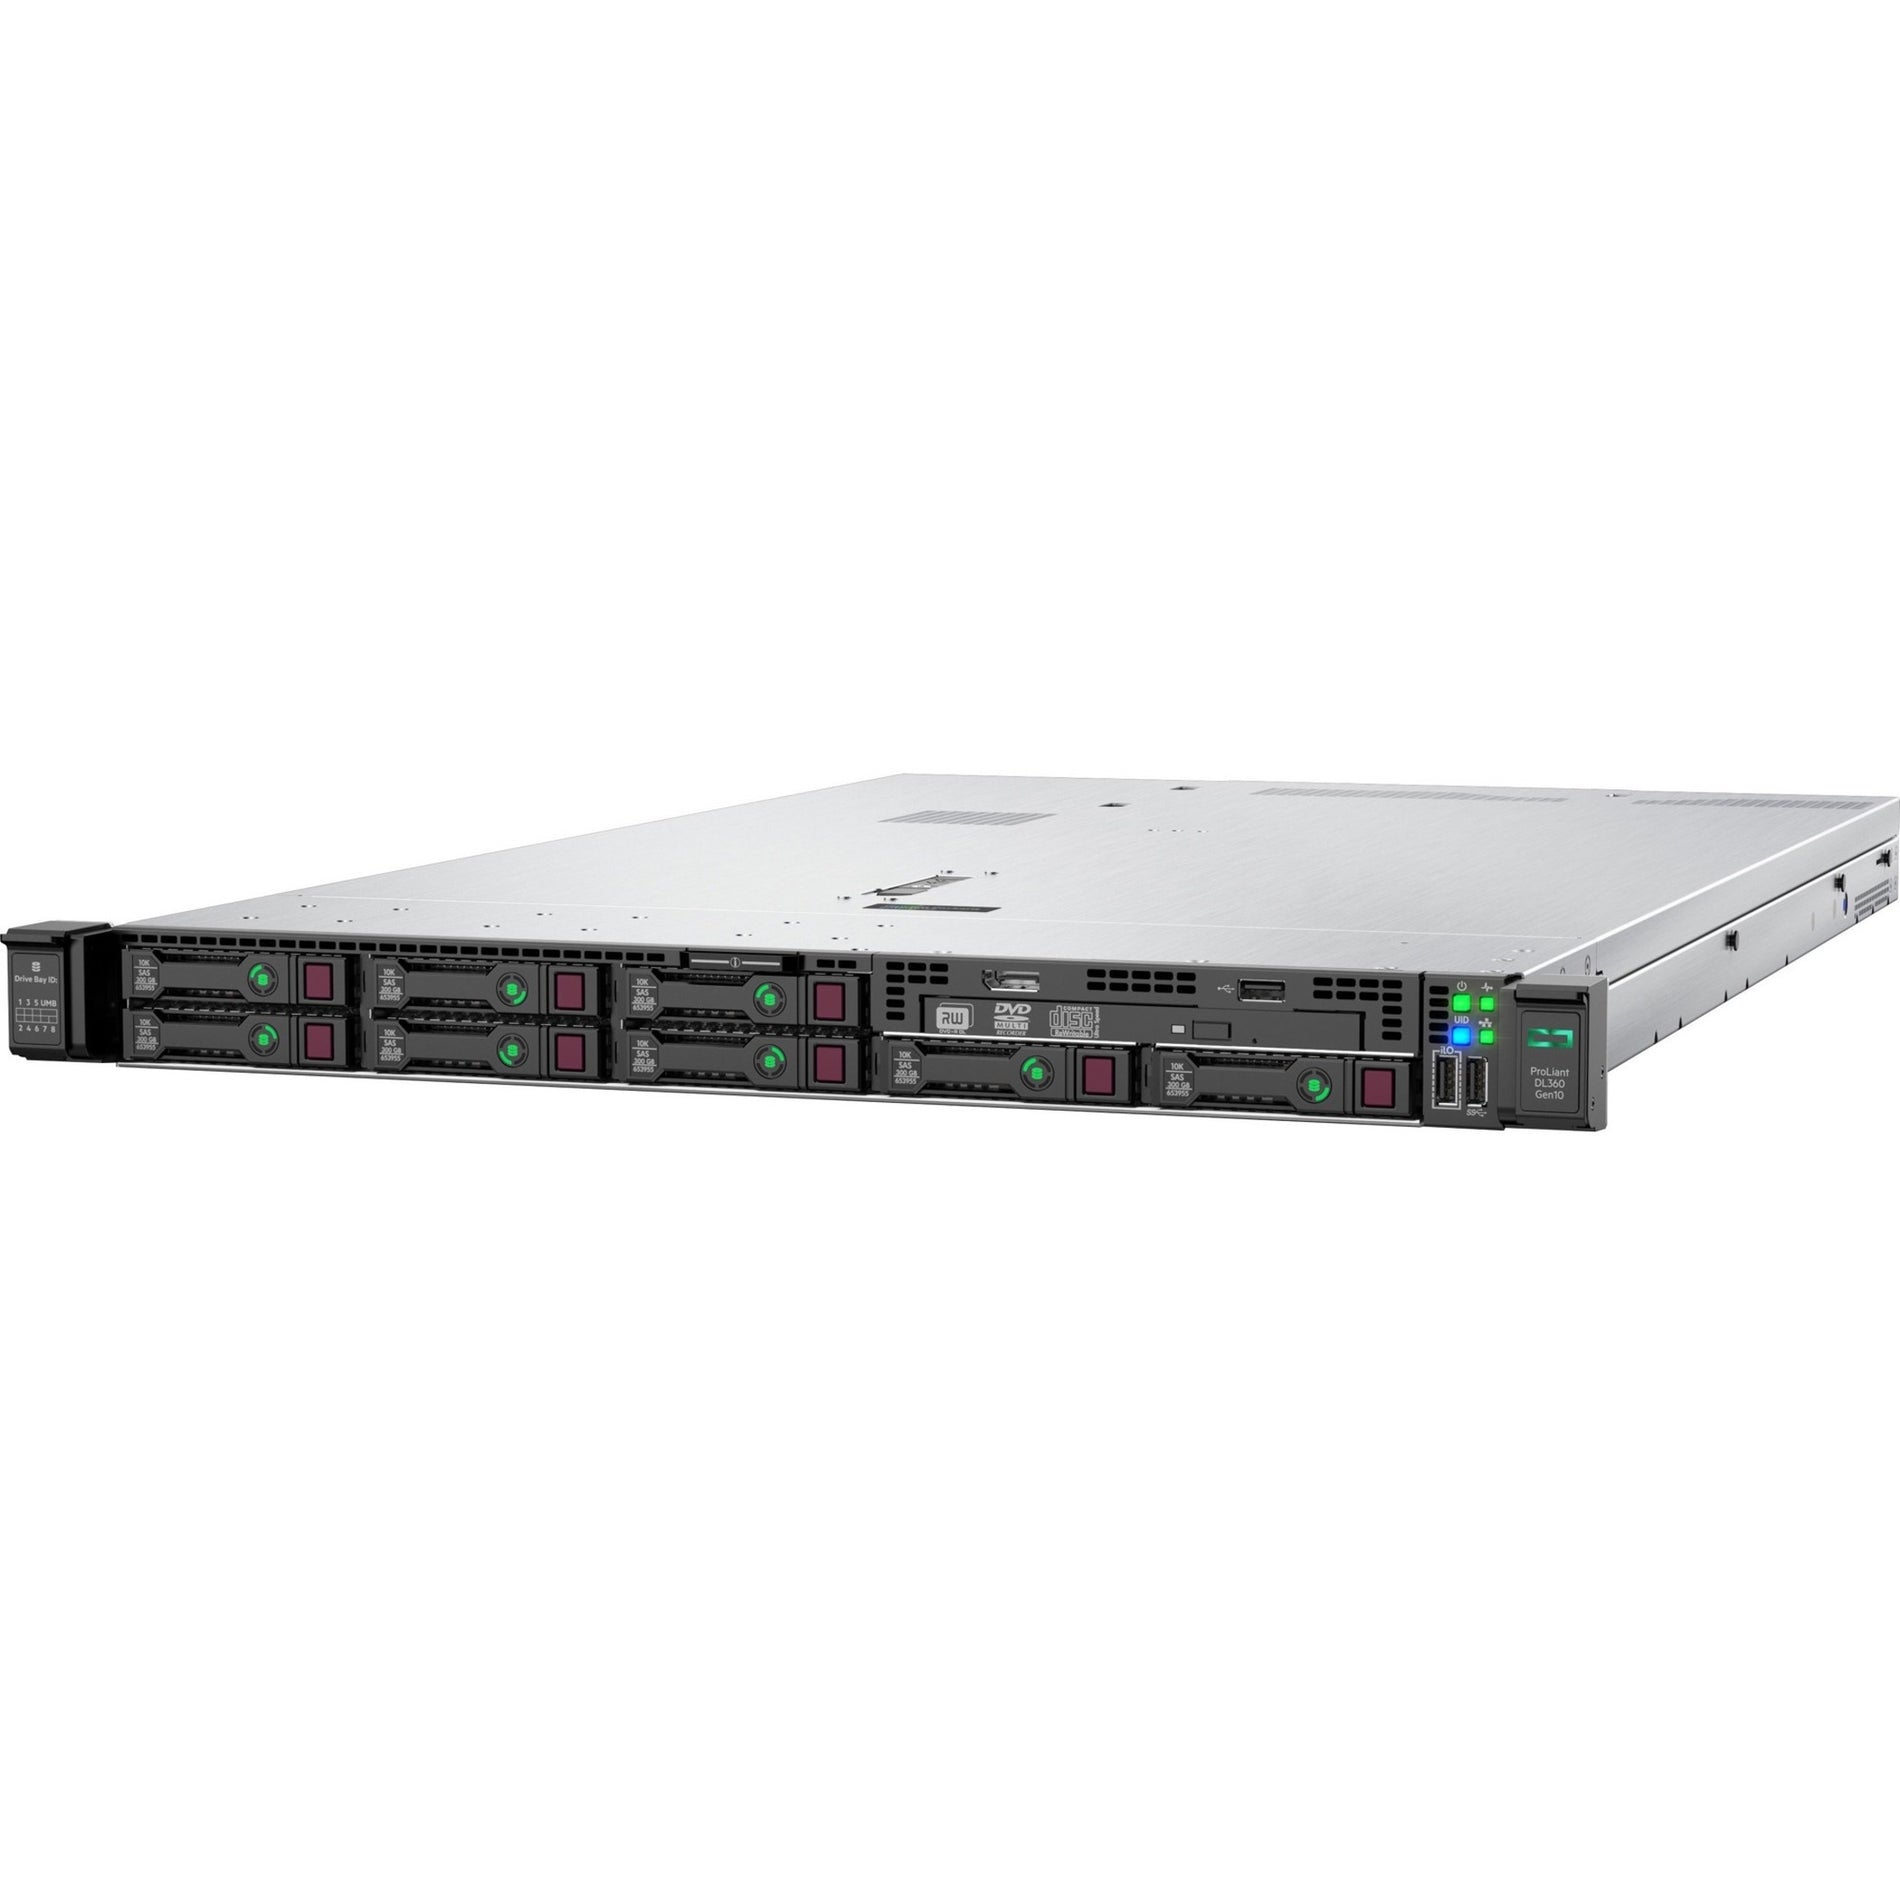 HPE ProLiant DL360 G10 1U Rack Server - Intel Xeon Silver 4214R, 32GB RAM, 12Gb/s SAS Controller [Discontinued]